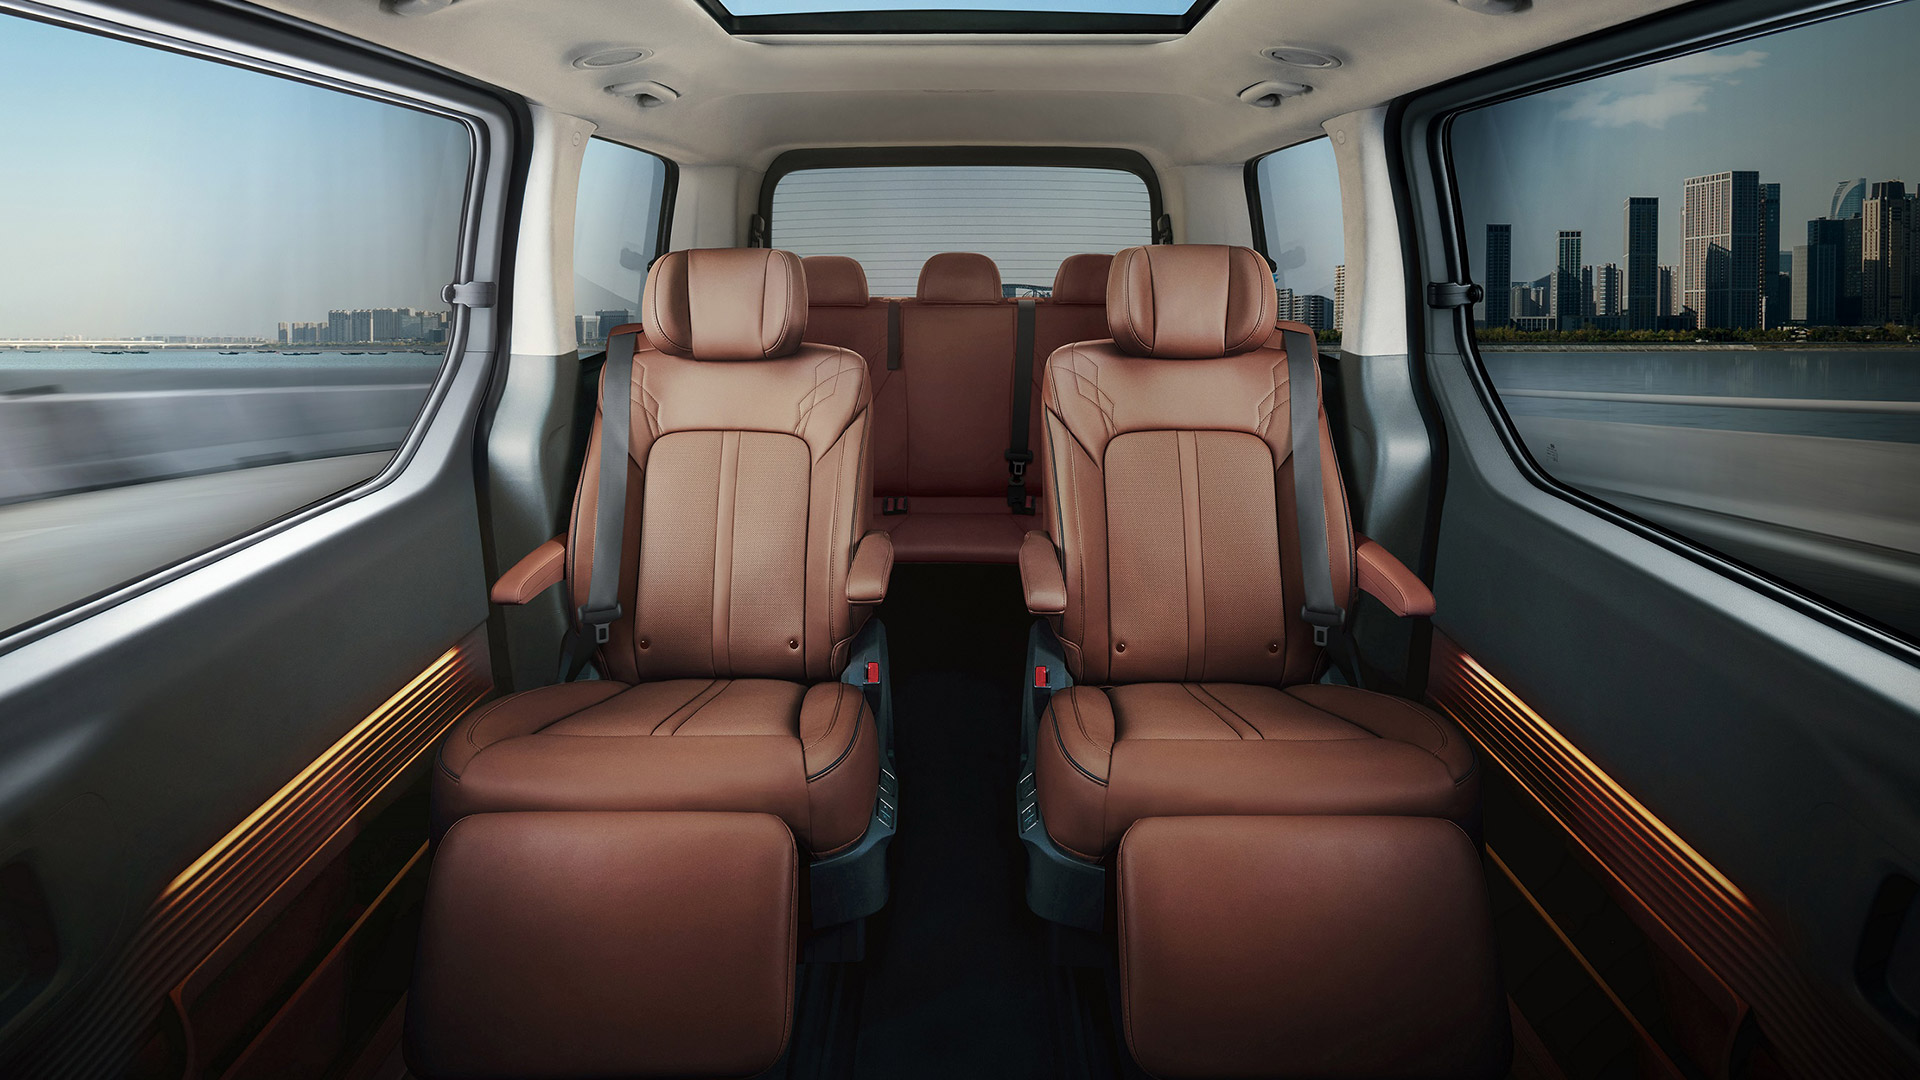 The Hyundai Staria Passenger Seats